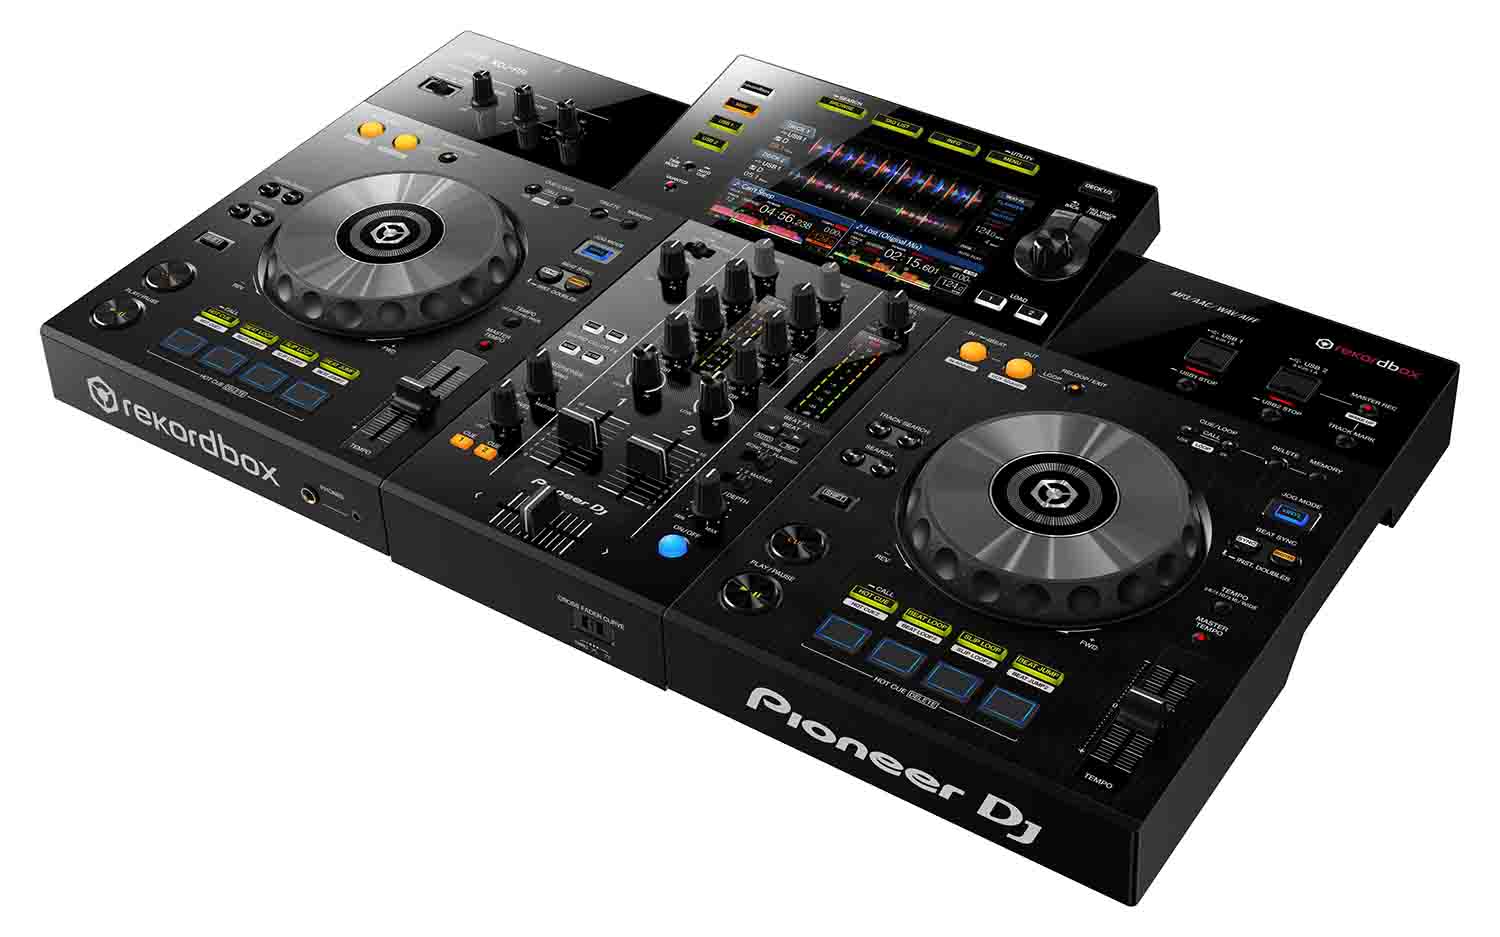 Pioneer DJ XDJ-RR All in one Digital DJ System with Rekordbox DJ Software - Hollywood DJ